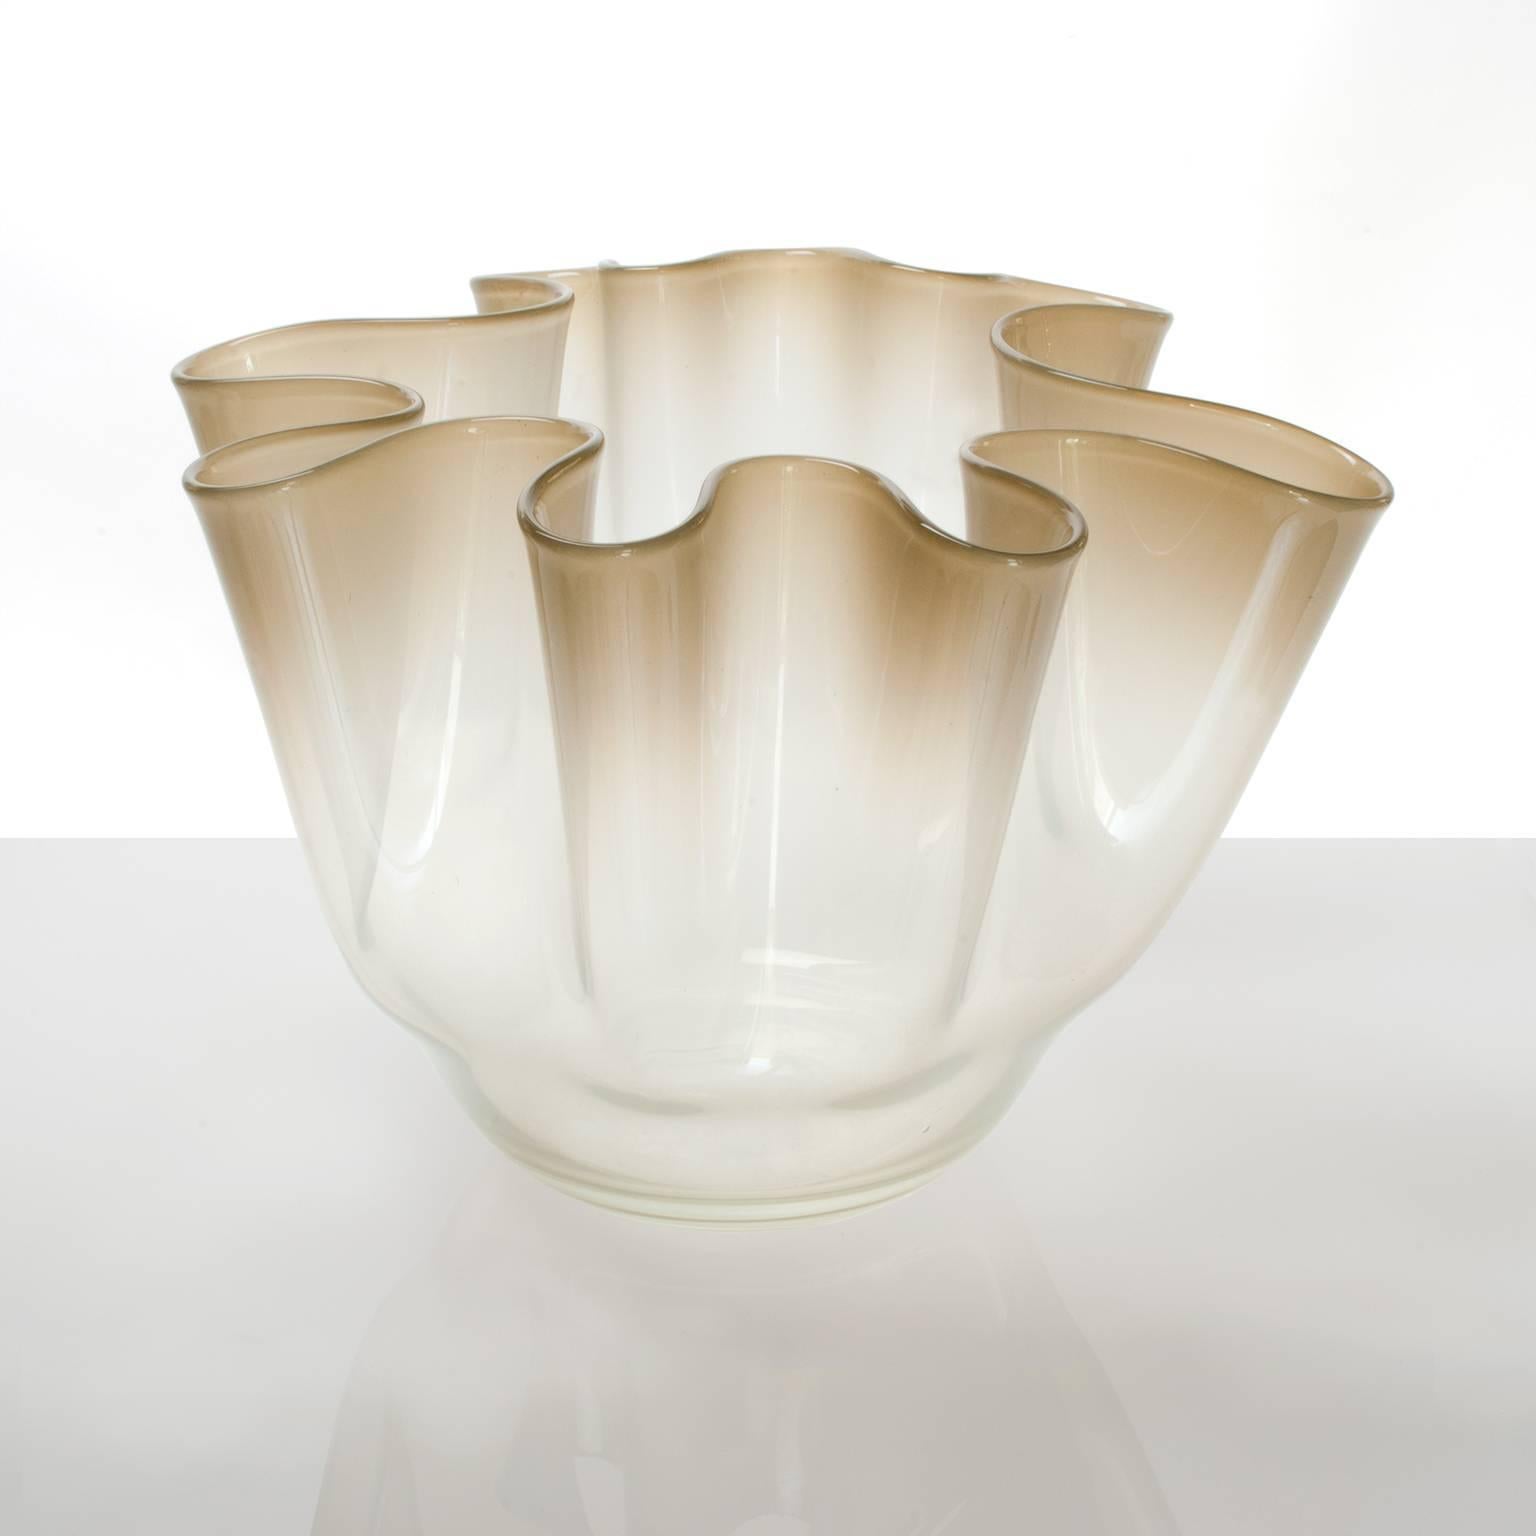 Un grand bol / vase danois moderne du milieu du siècle par Kylle Svanlund pour Holmgaard Glasværk, vers les années 1960. La pièce présente une forme doucement pliée en verre de couleur claire à or pâle. Marqué sur le fond.
Mesures : Hauteur 10